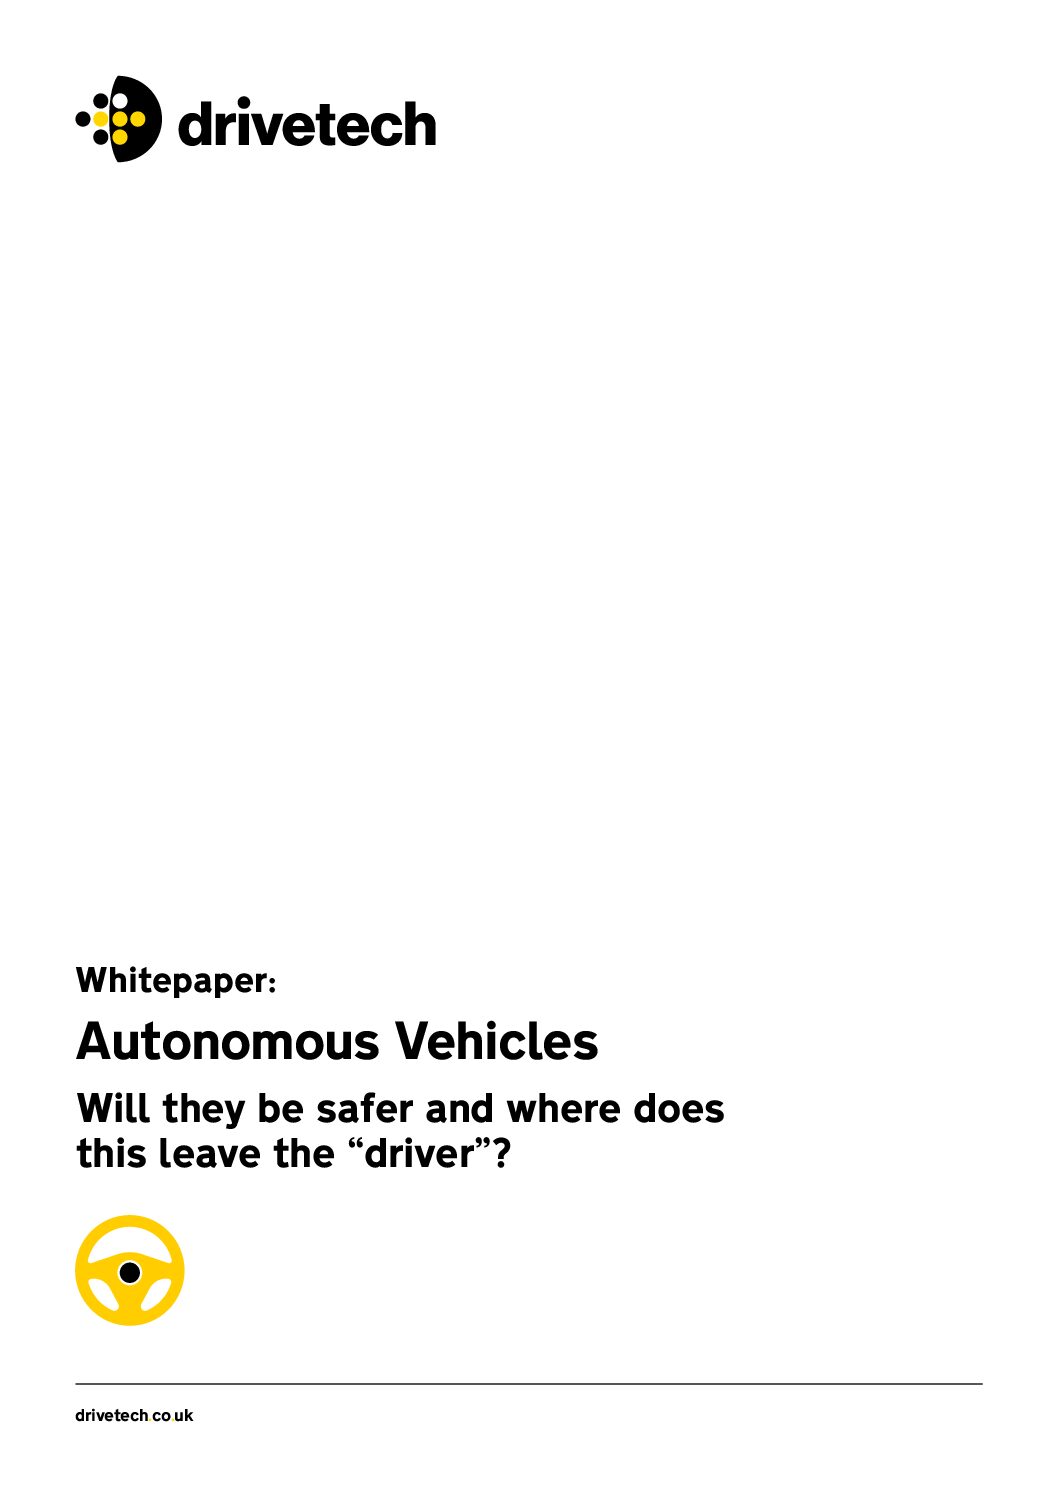 Whitepaper – Autonomous Vehicles & The Driver